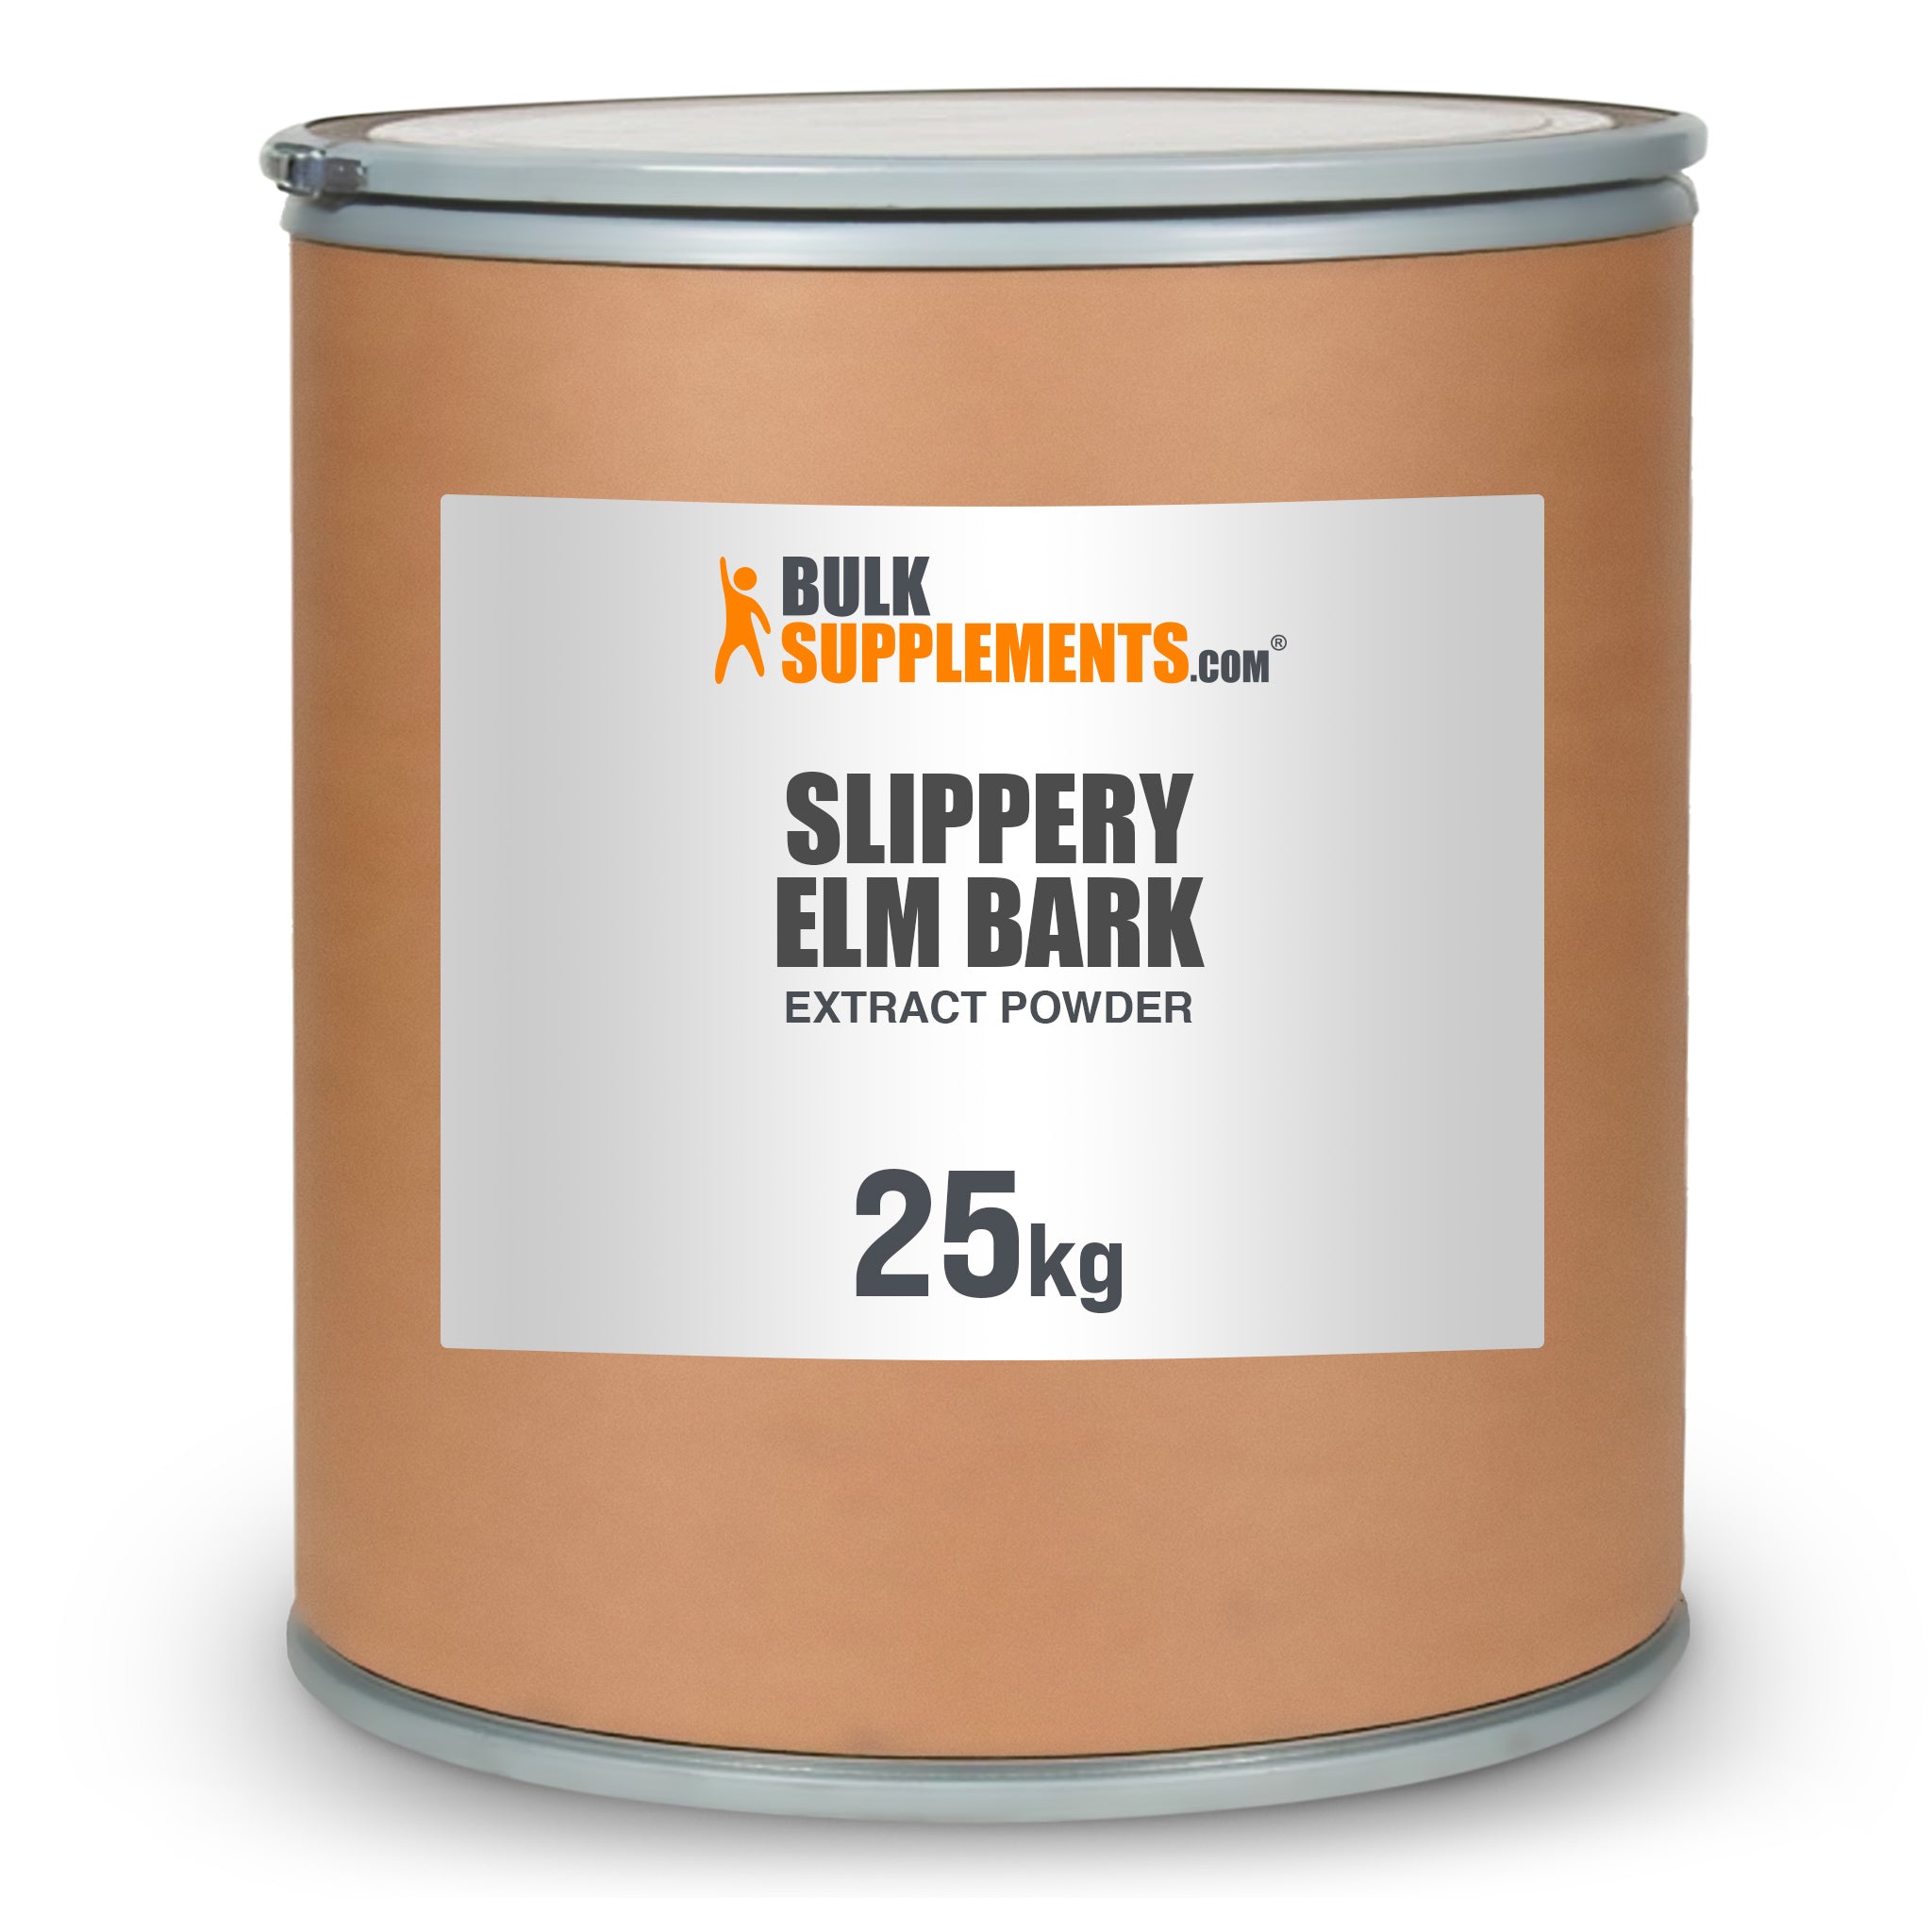 BulkSupplements Slippery Elm Bark Extract Powder 25kg drum